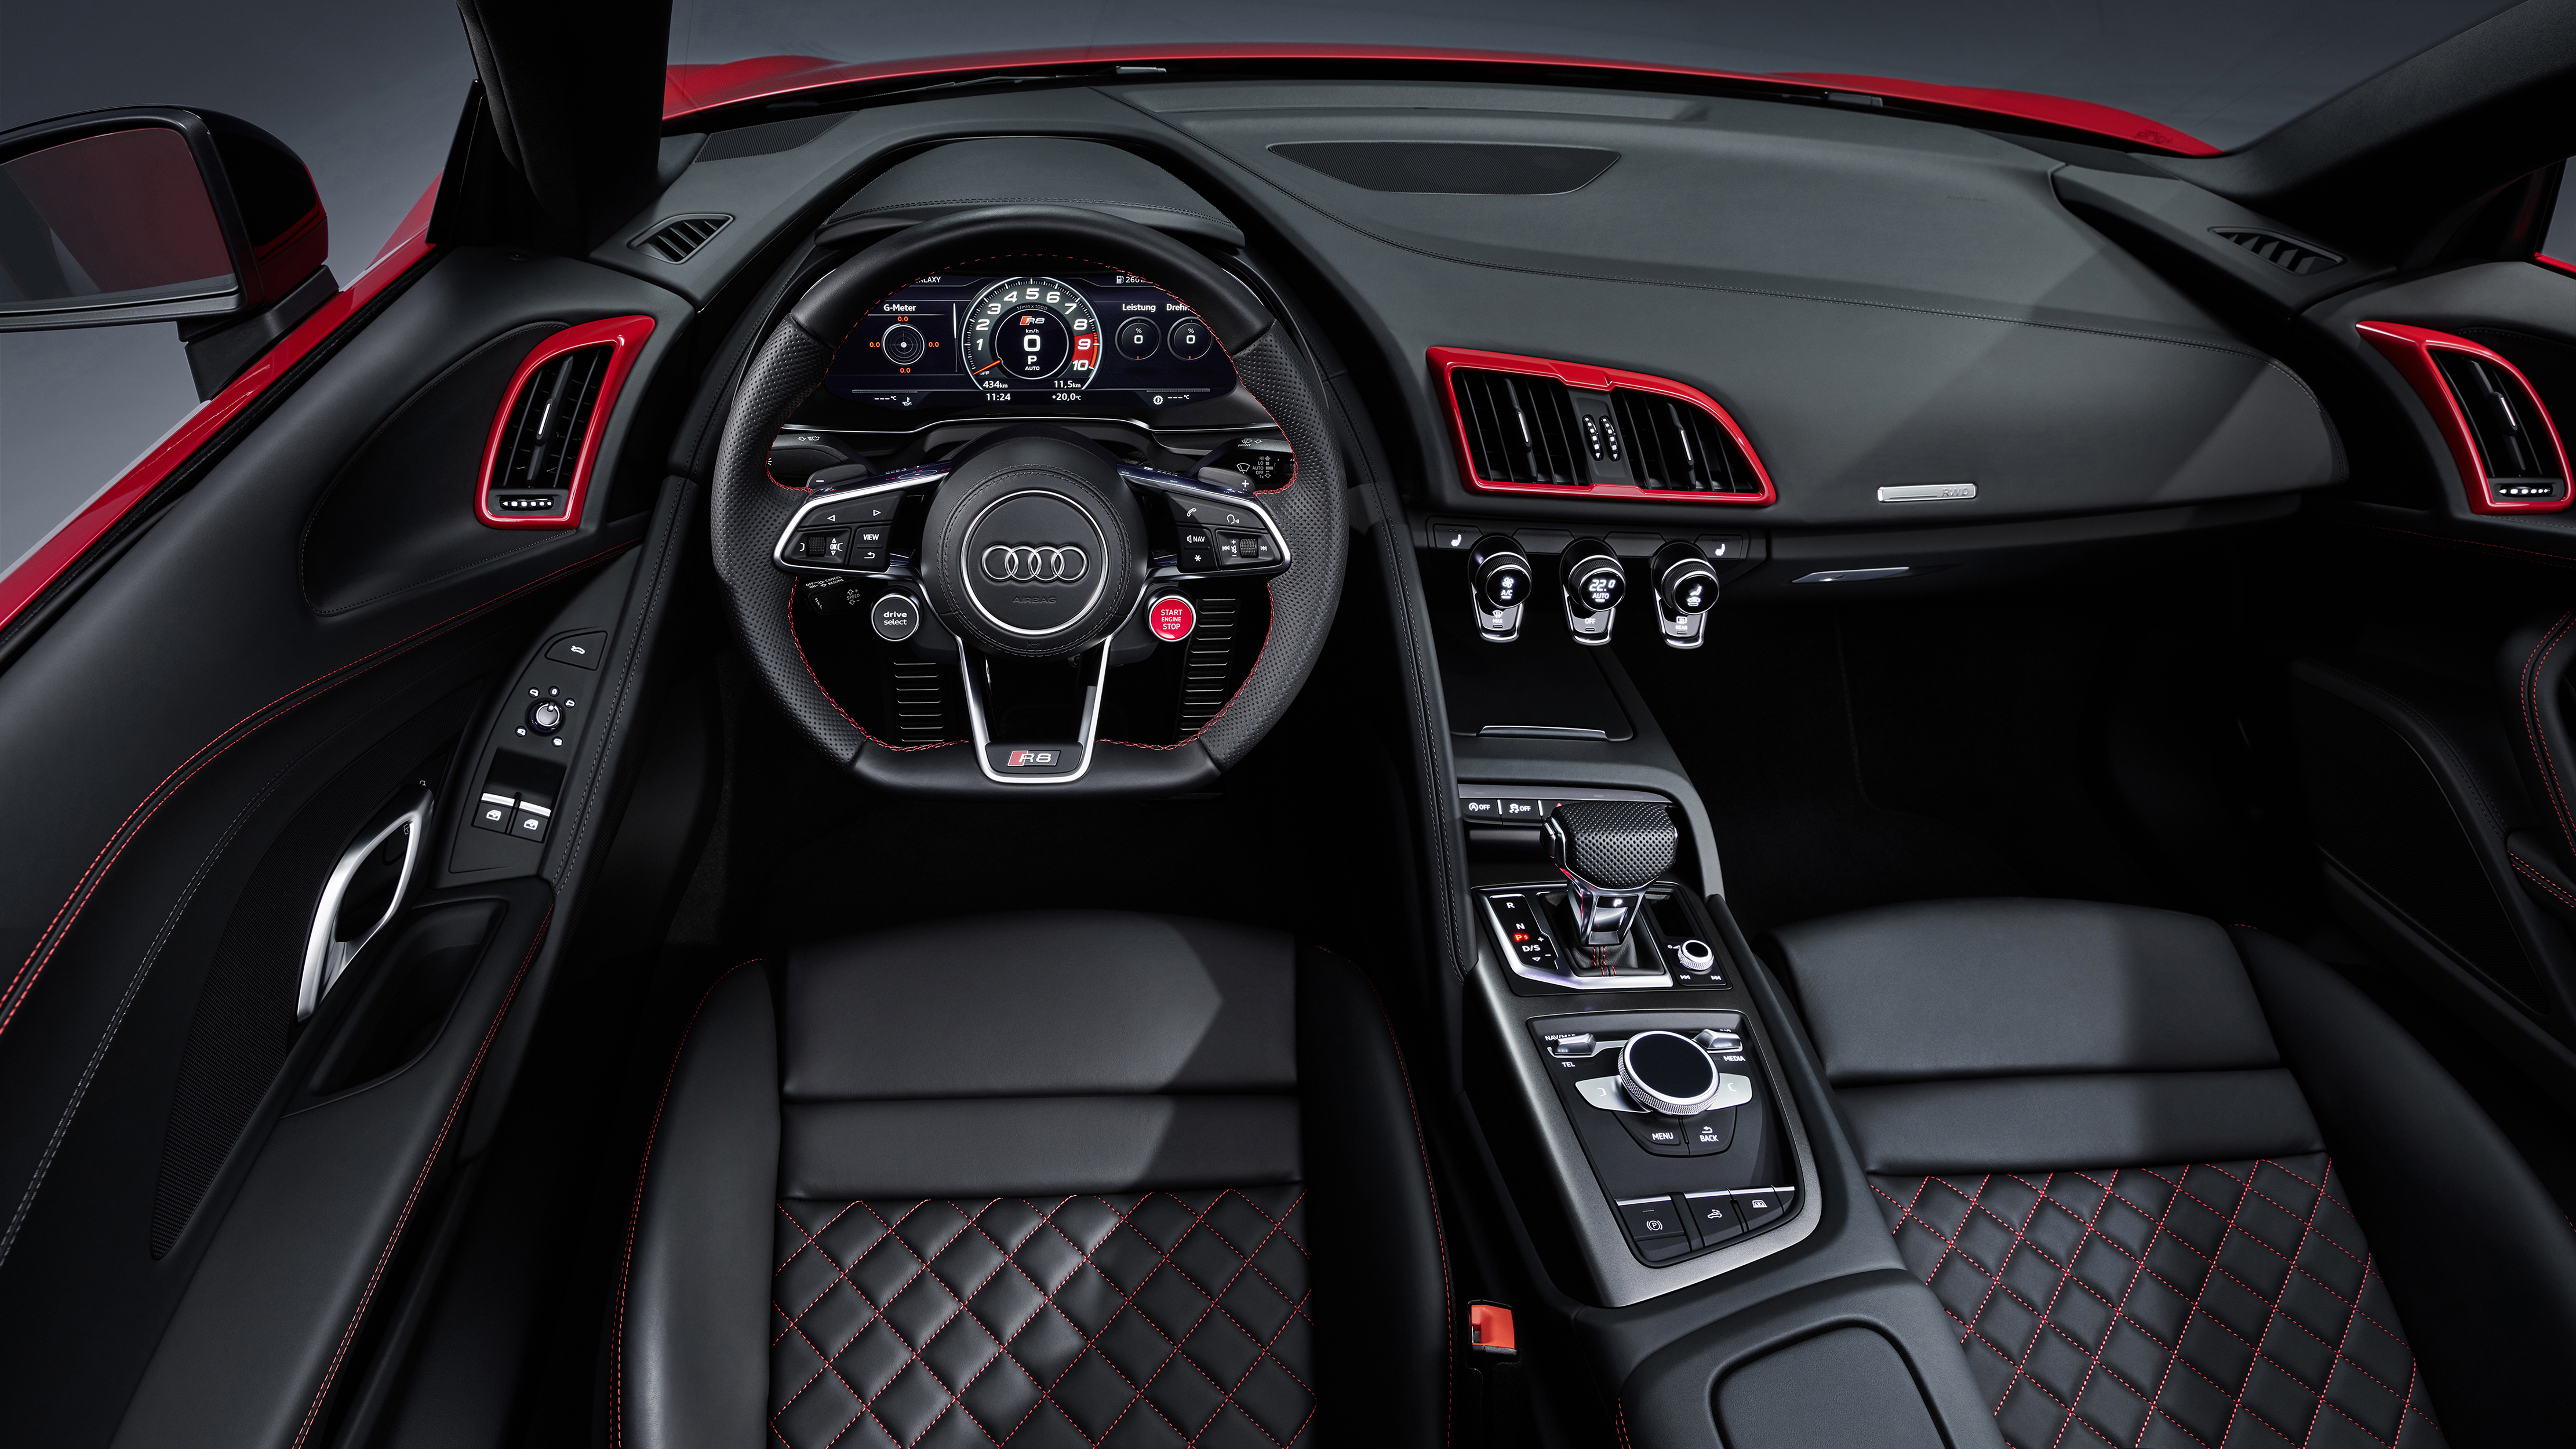 Audi R8 Spyder mod specifications